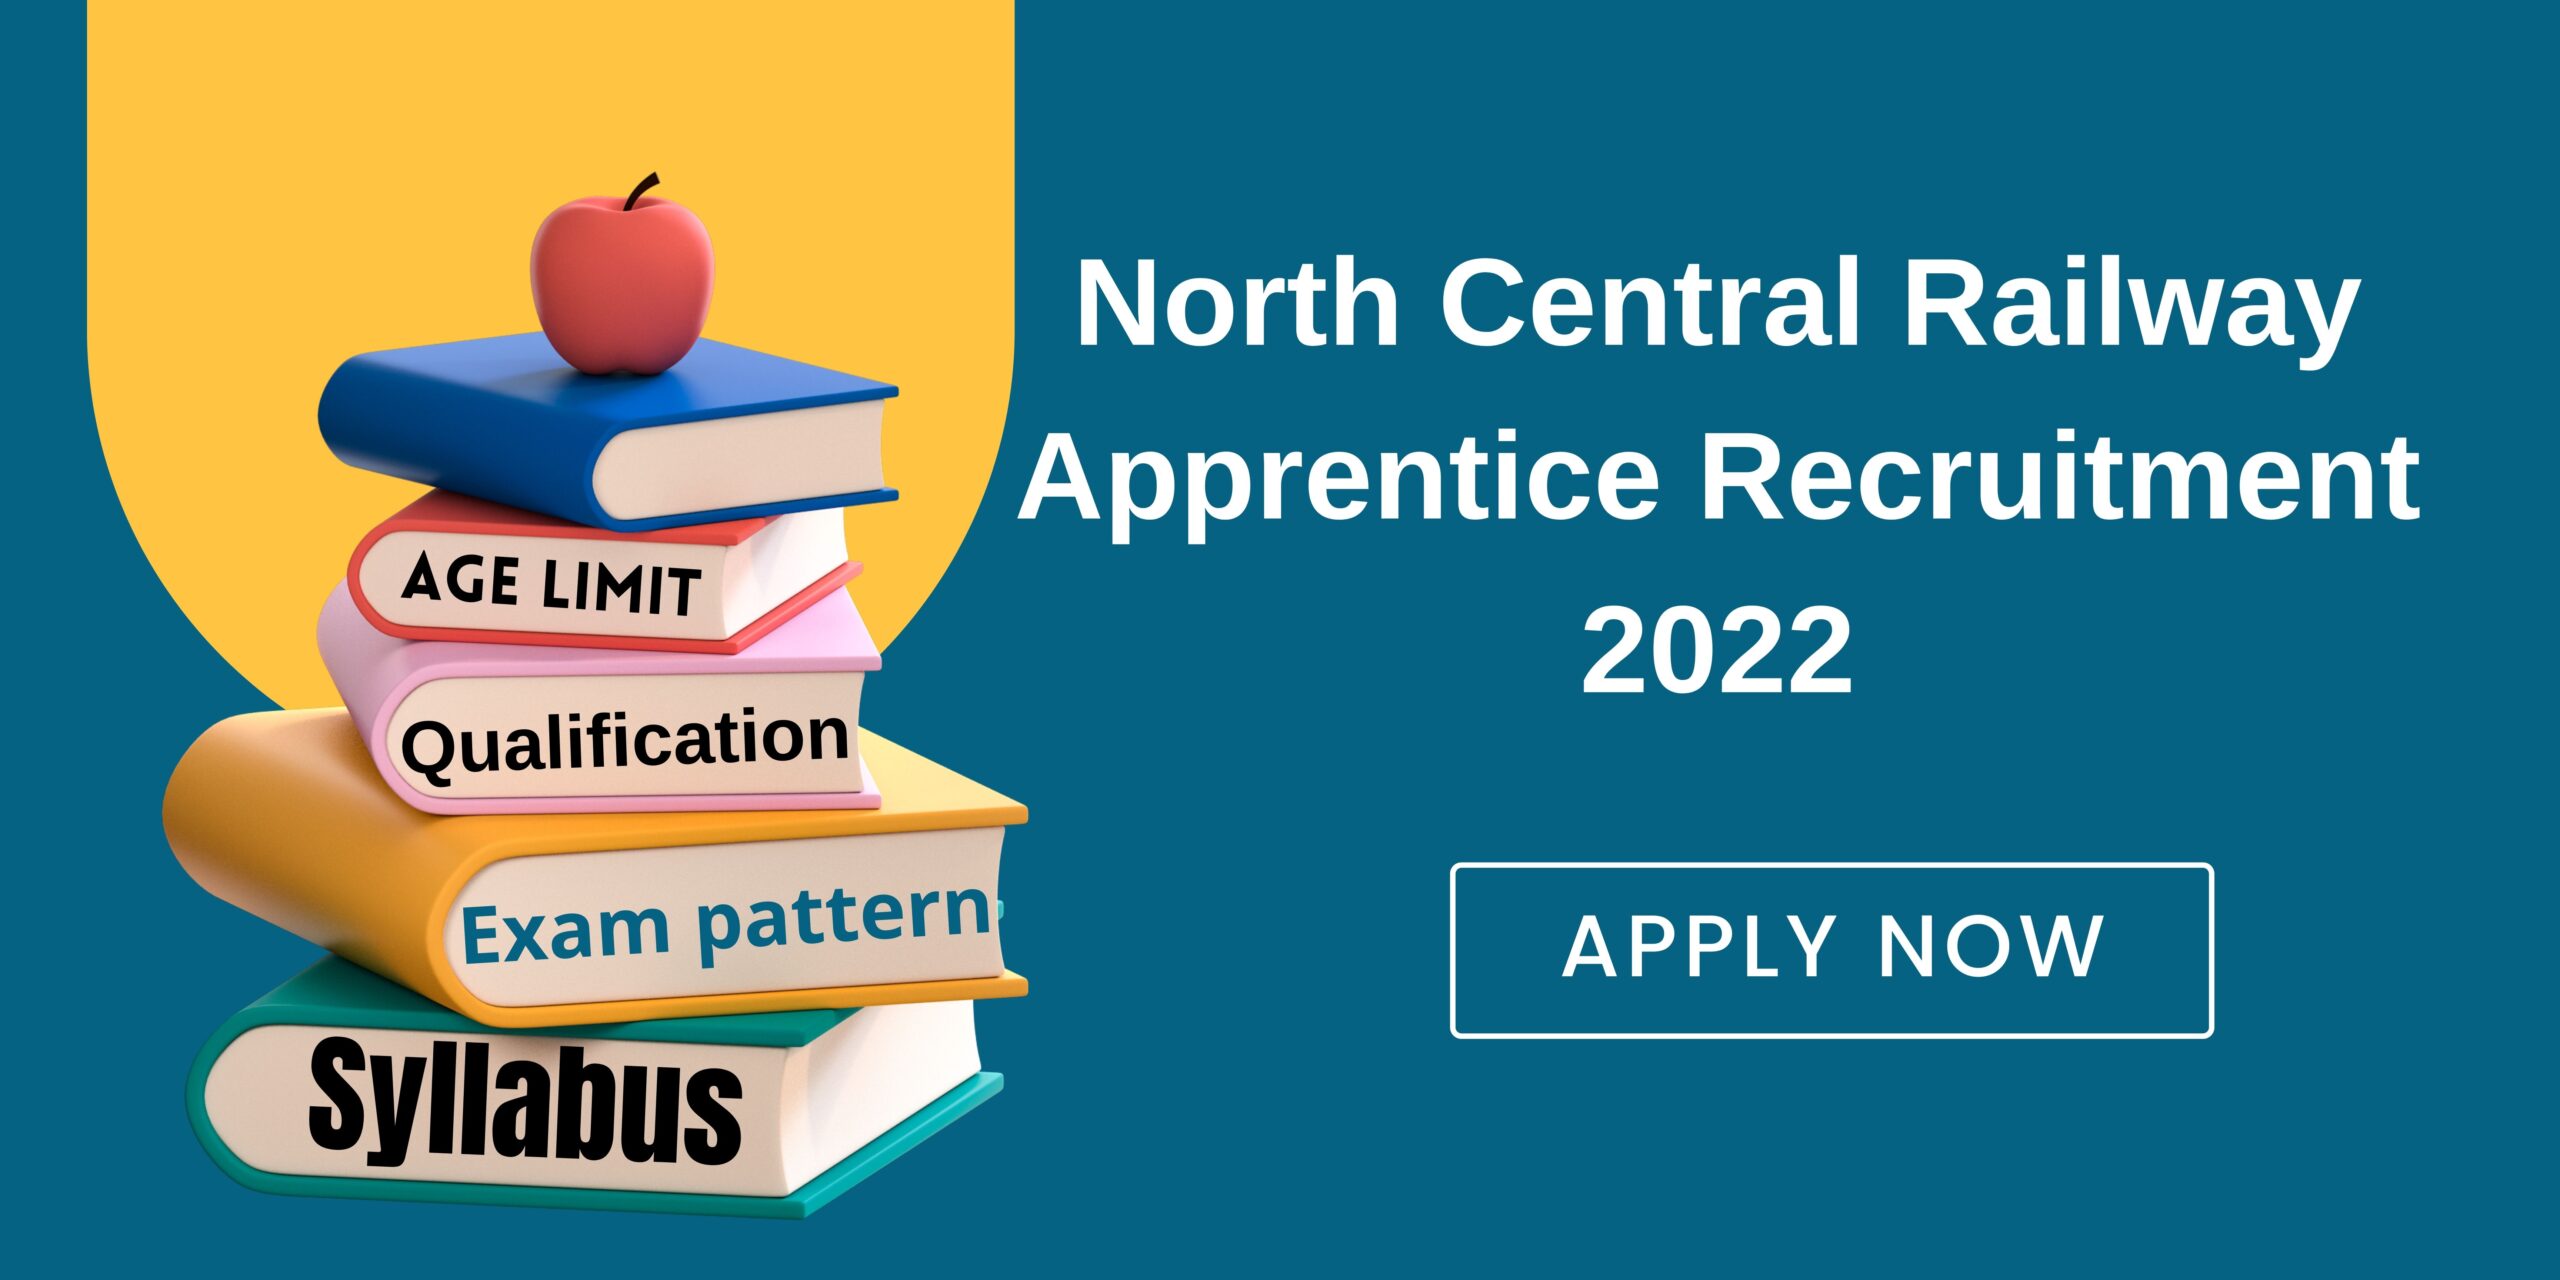 North Central Railway Apprentice Recruitment 2022